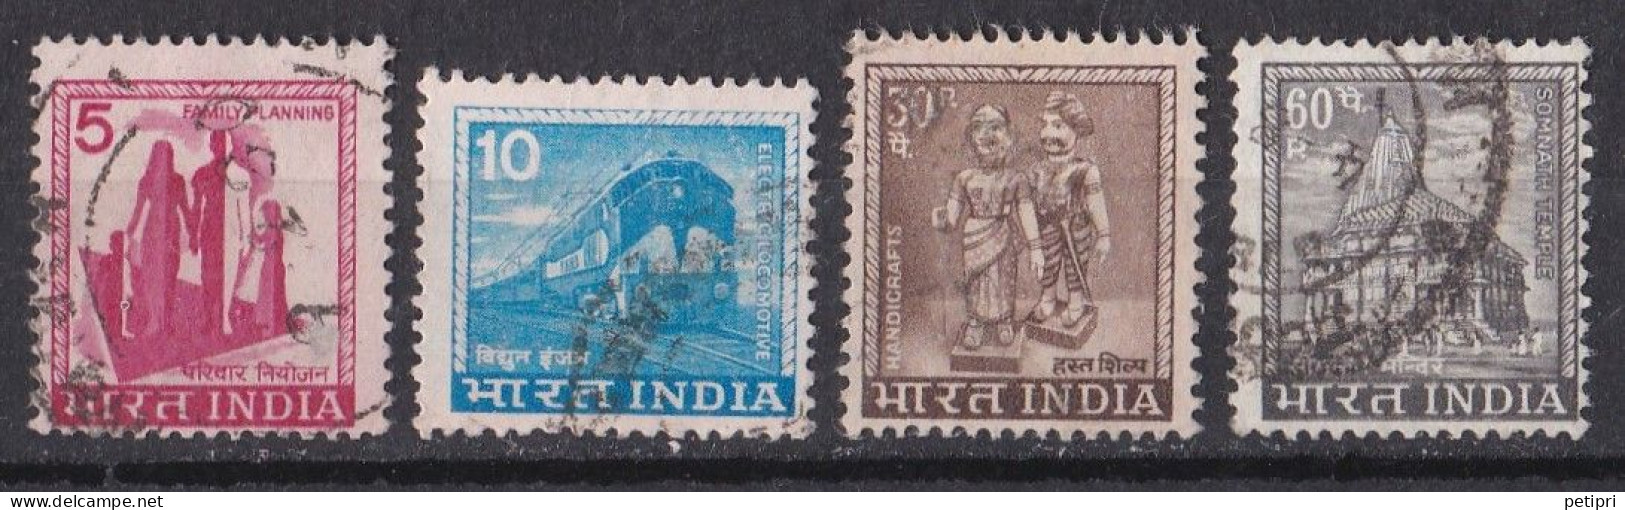 Inde  - 1970  1979 -   Y&T  N °   582   585   586  Et  587   Oblitéré - Usados